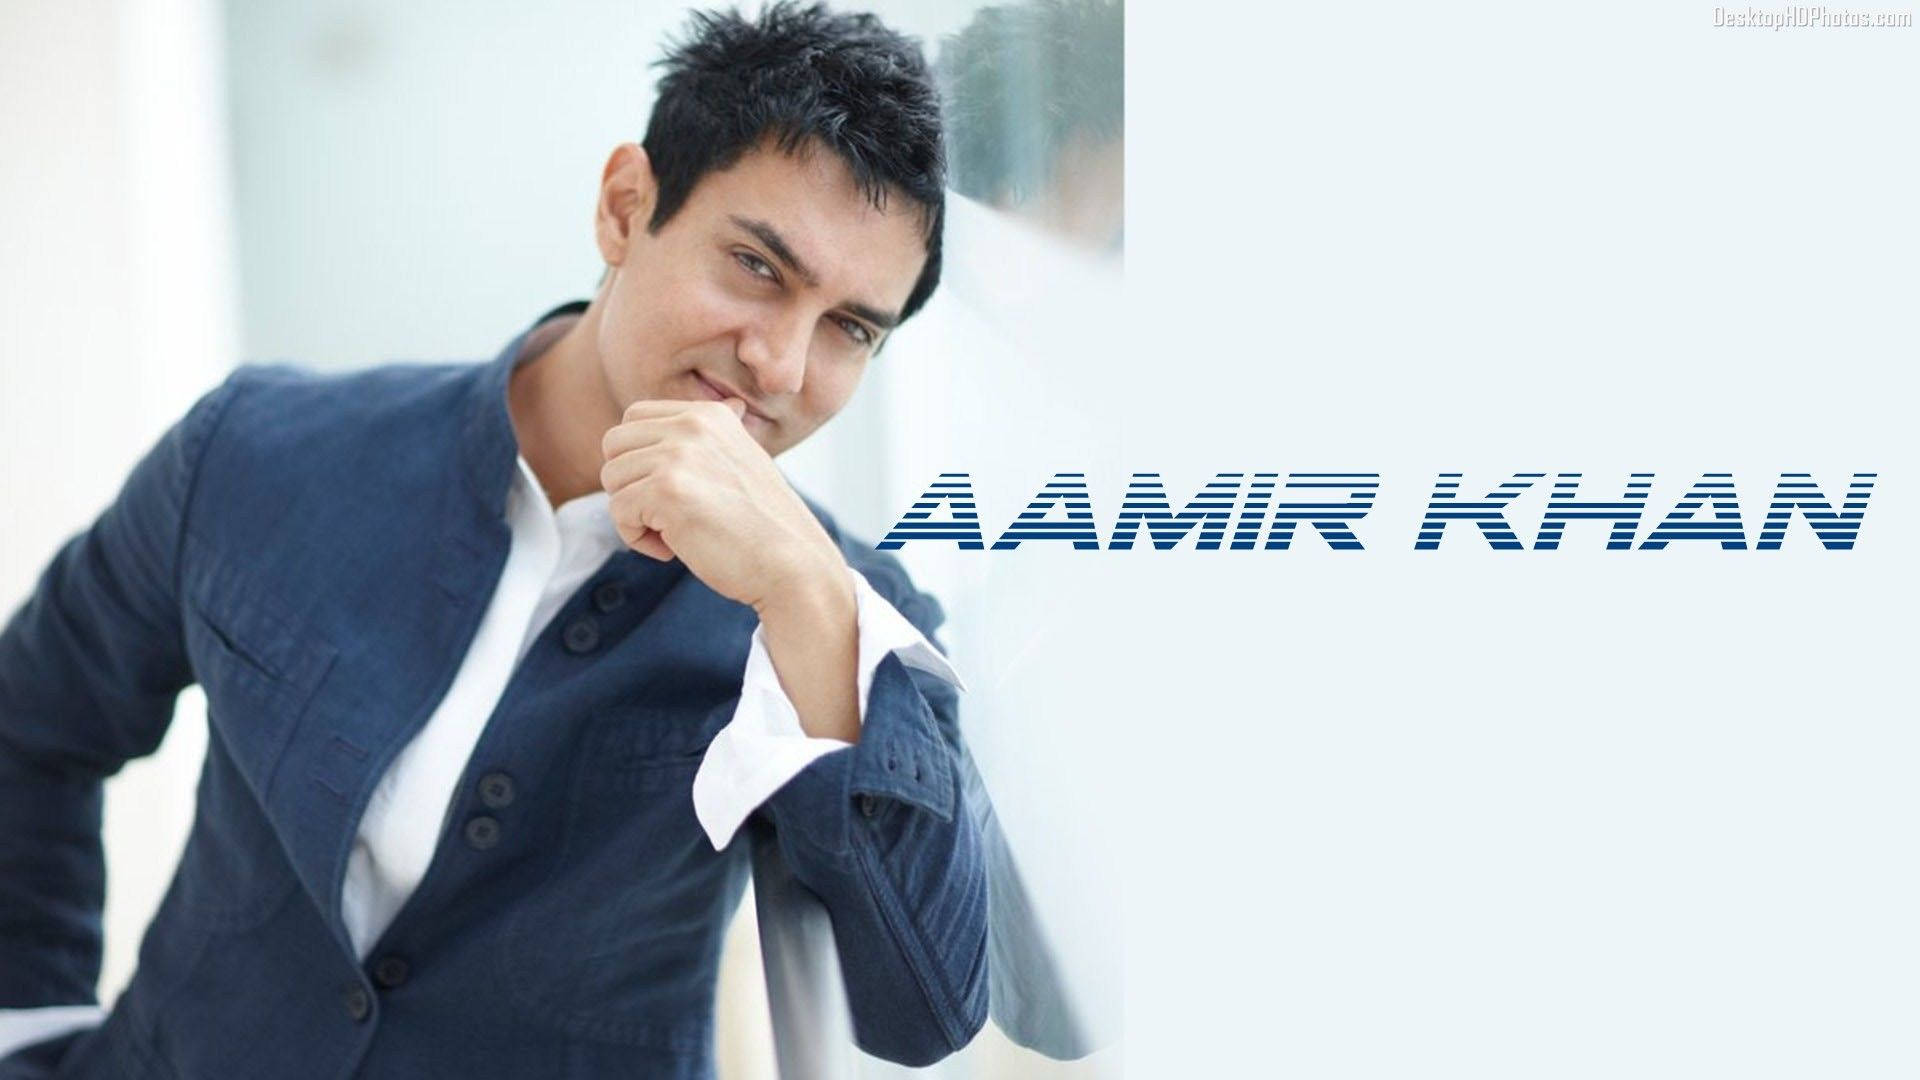 International Star Aamir Khan